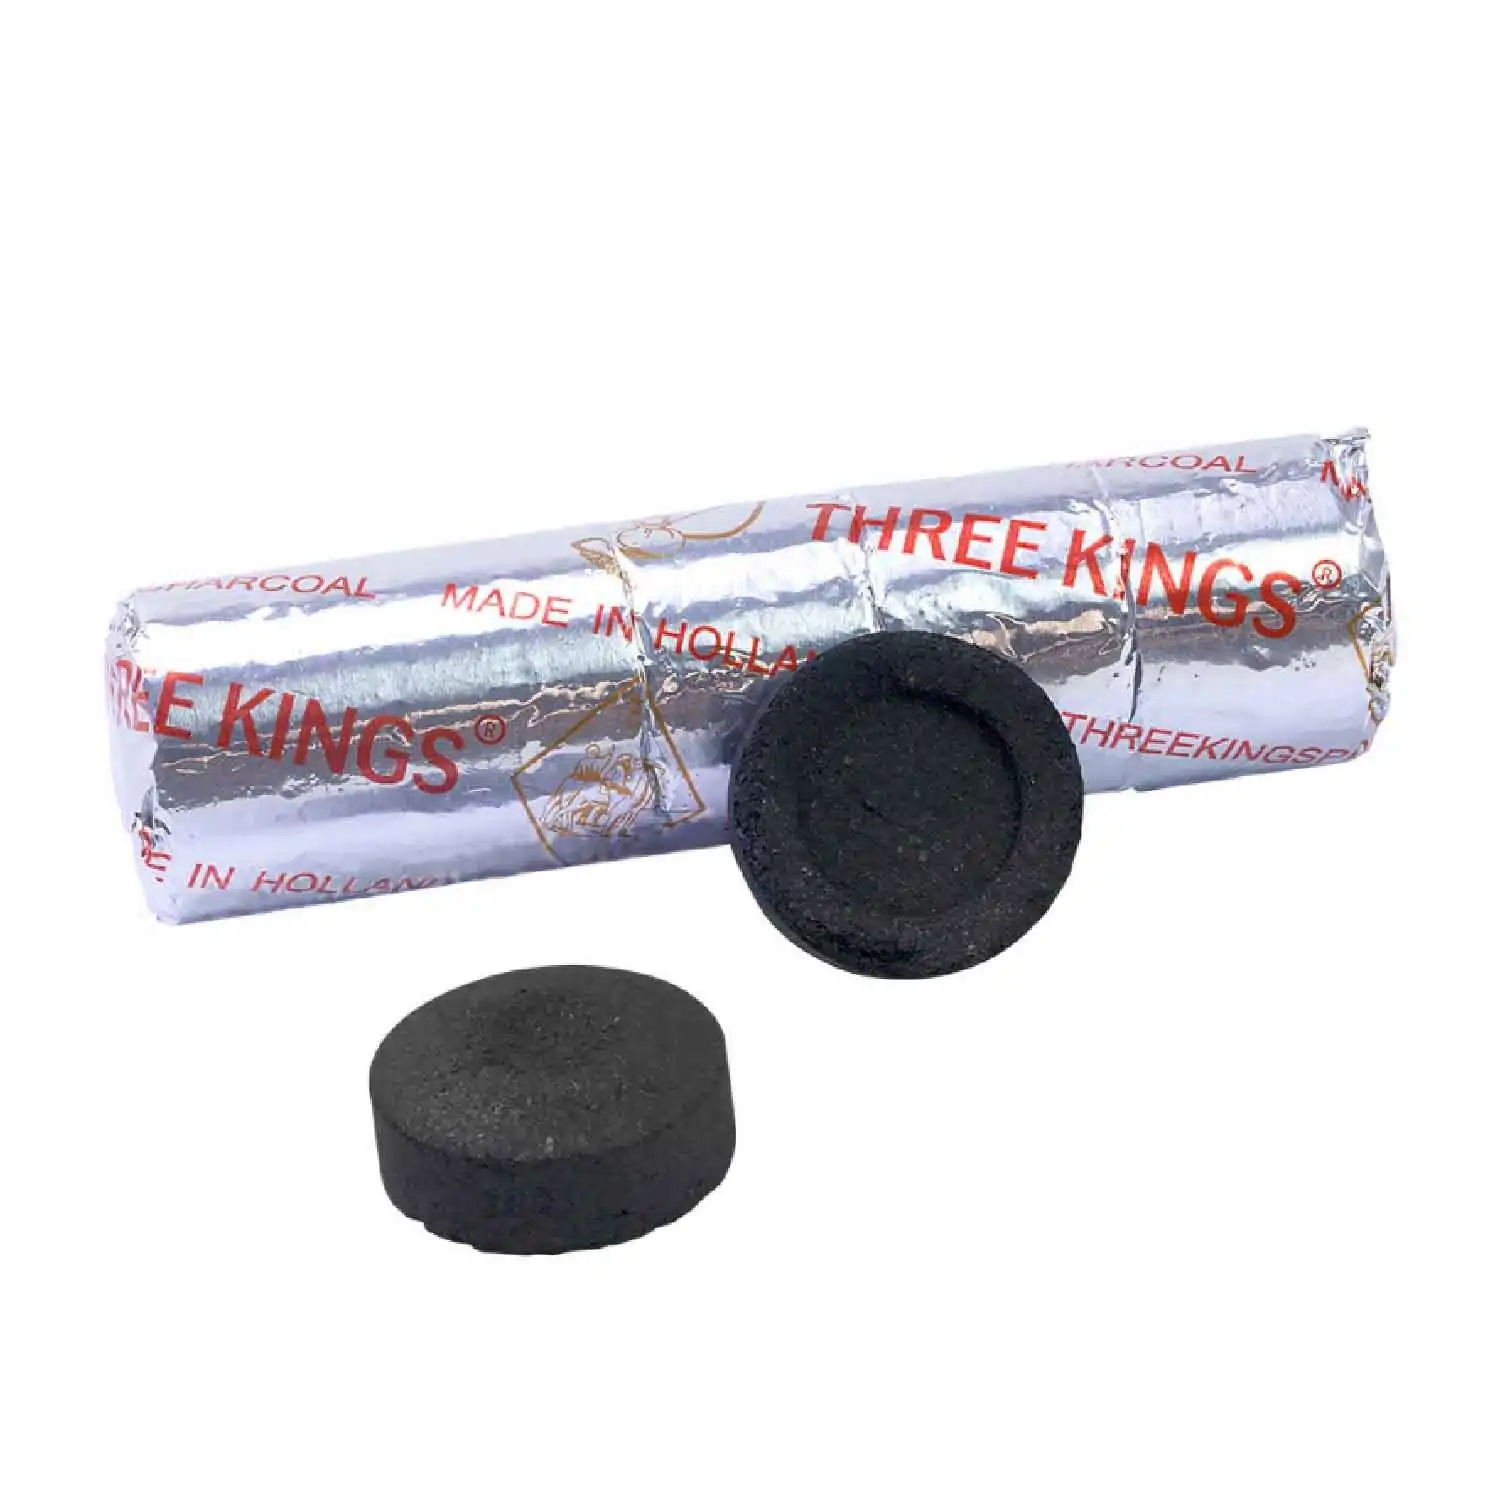 Three Kings charcoal 10pcs - Buy at Real Tobacco